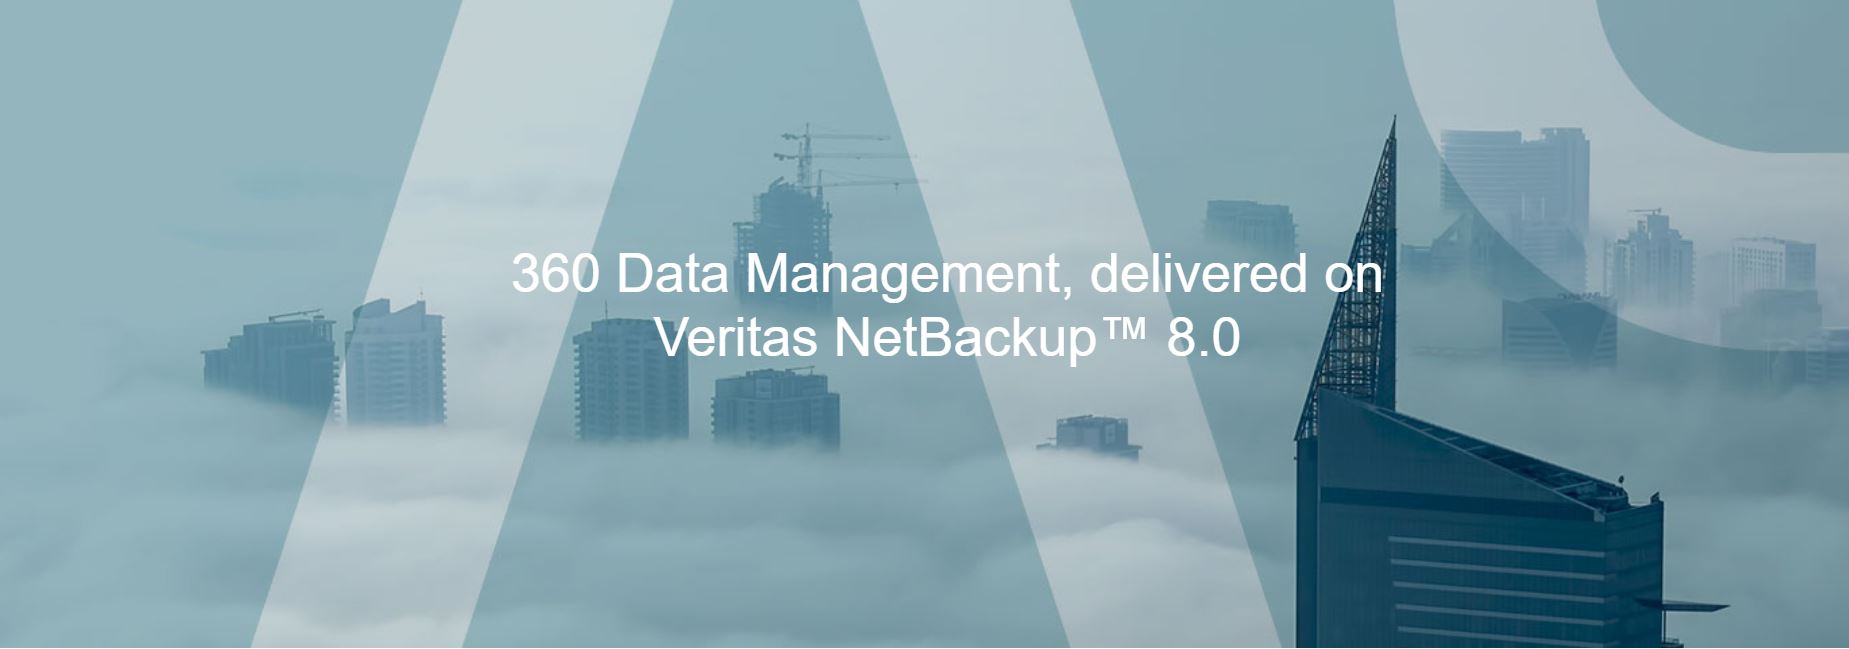 360 Data Management, delivered on Veritas NetBackup™ 8.0